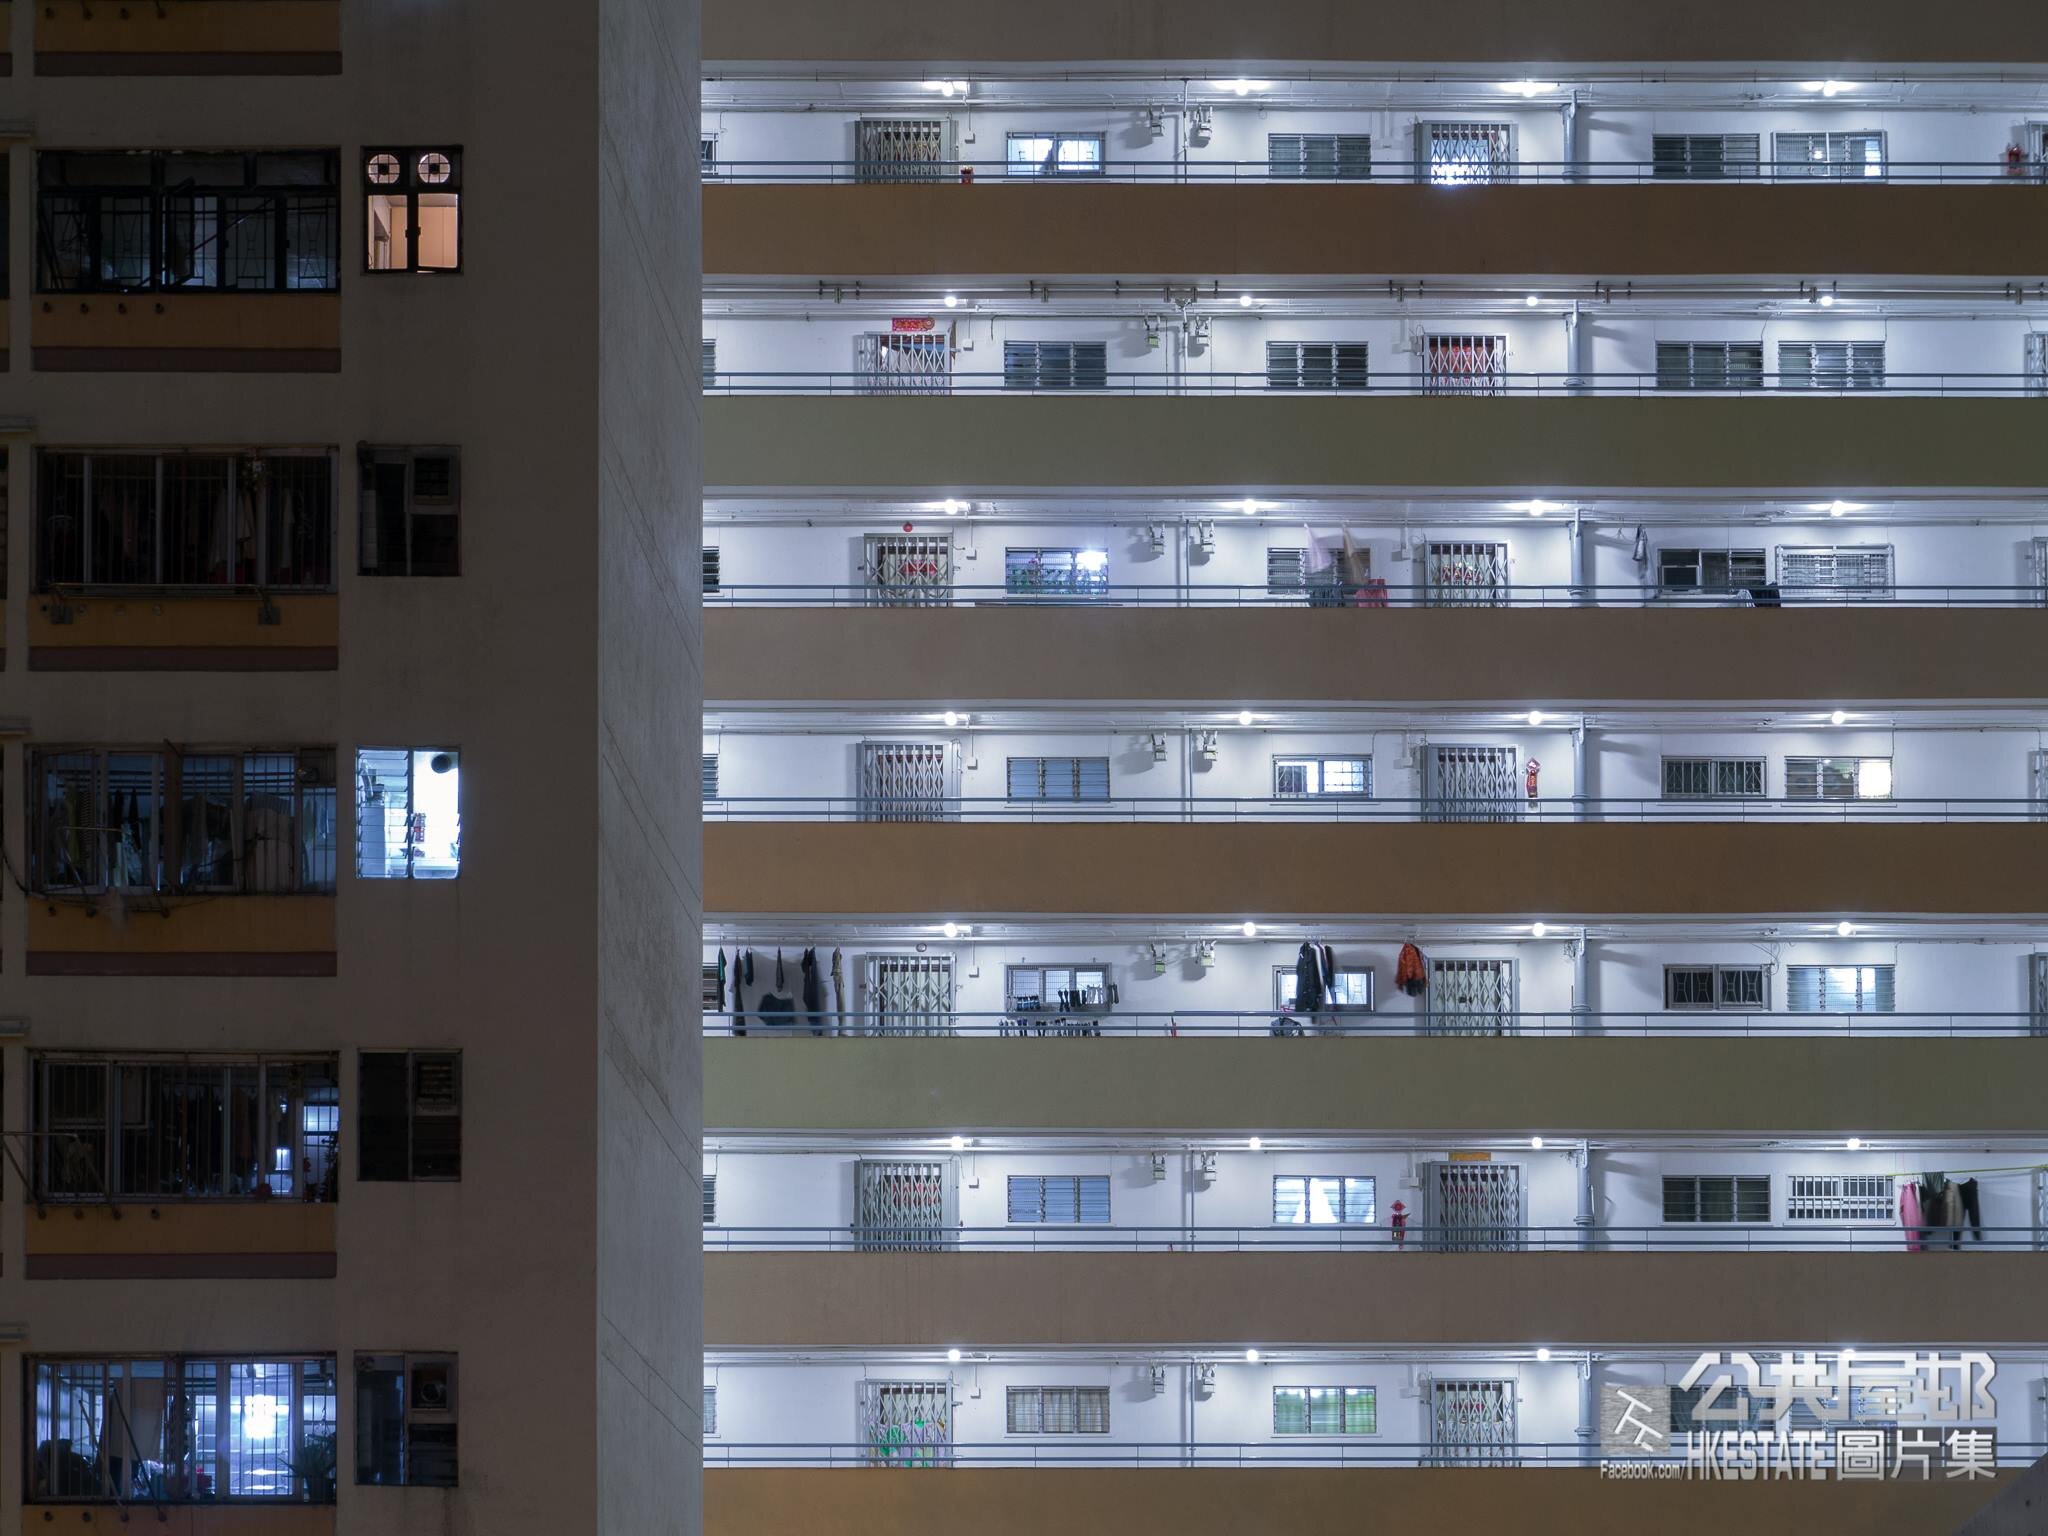 我地係香港人 - William Leung | 公屋攝影師呈現社區人文真實的一面